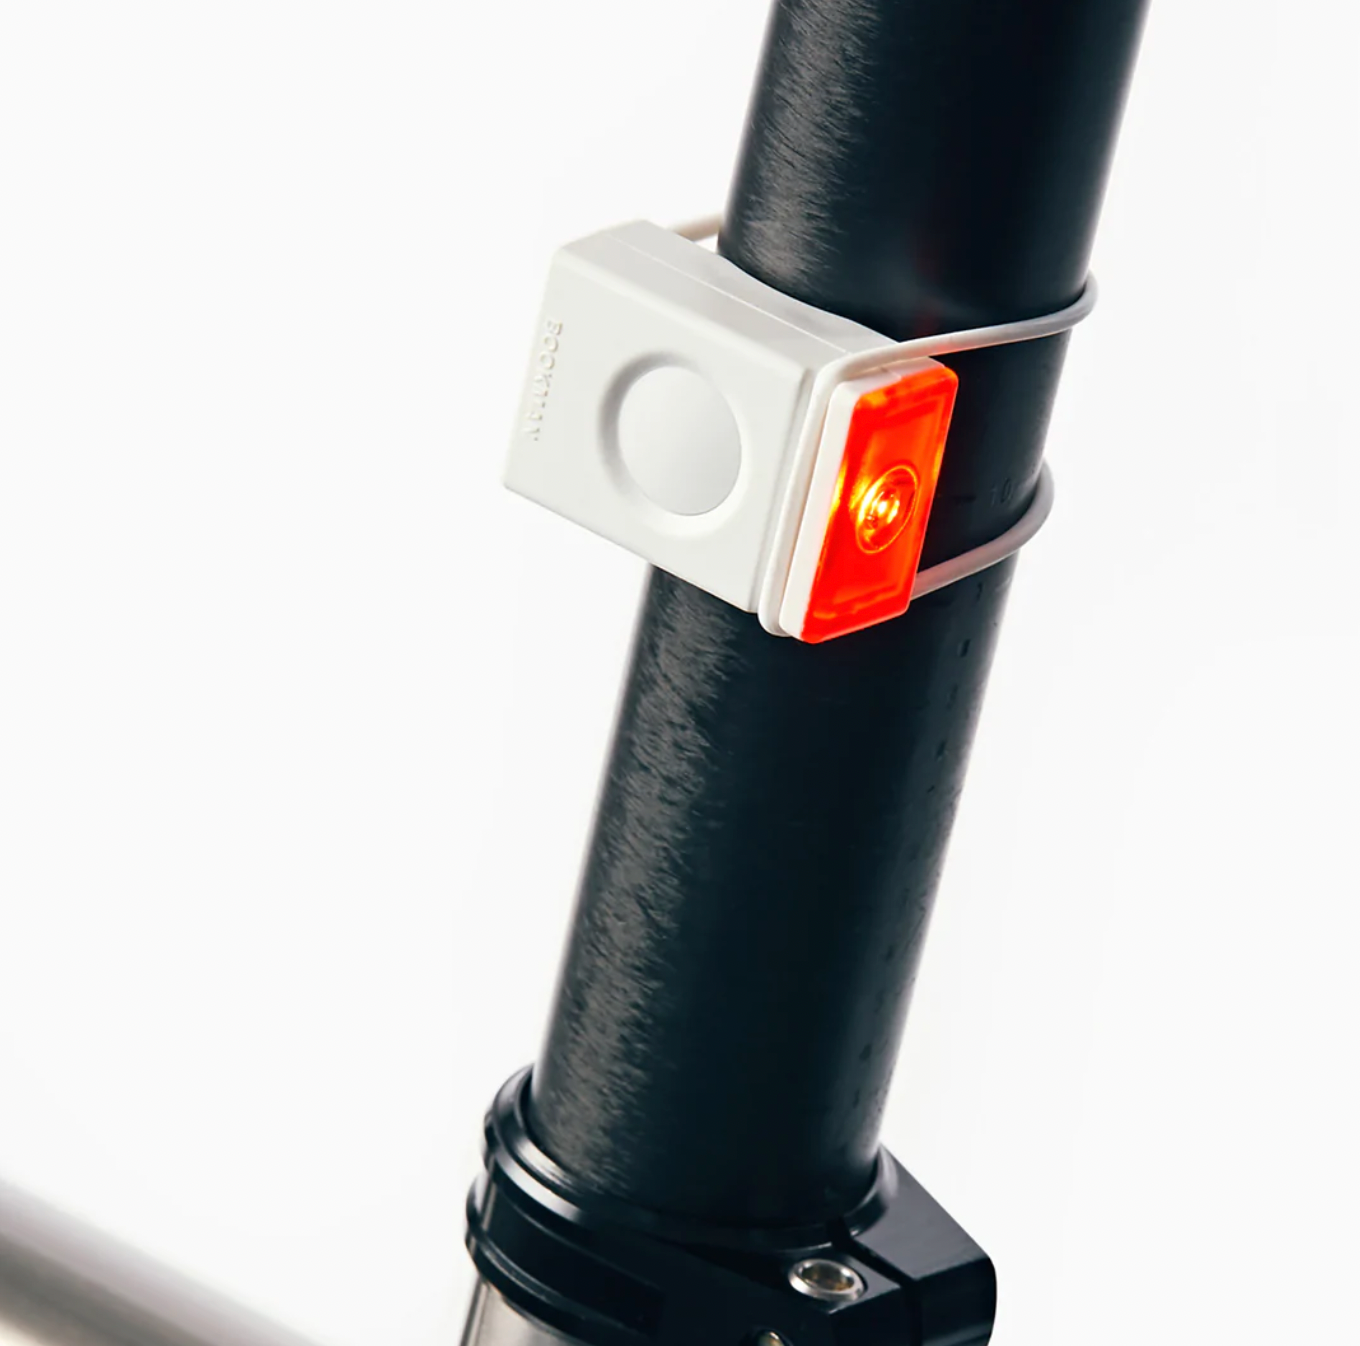 Światełko do roweru Bookman - Block Light na tył